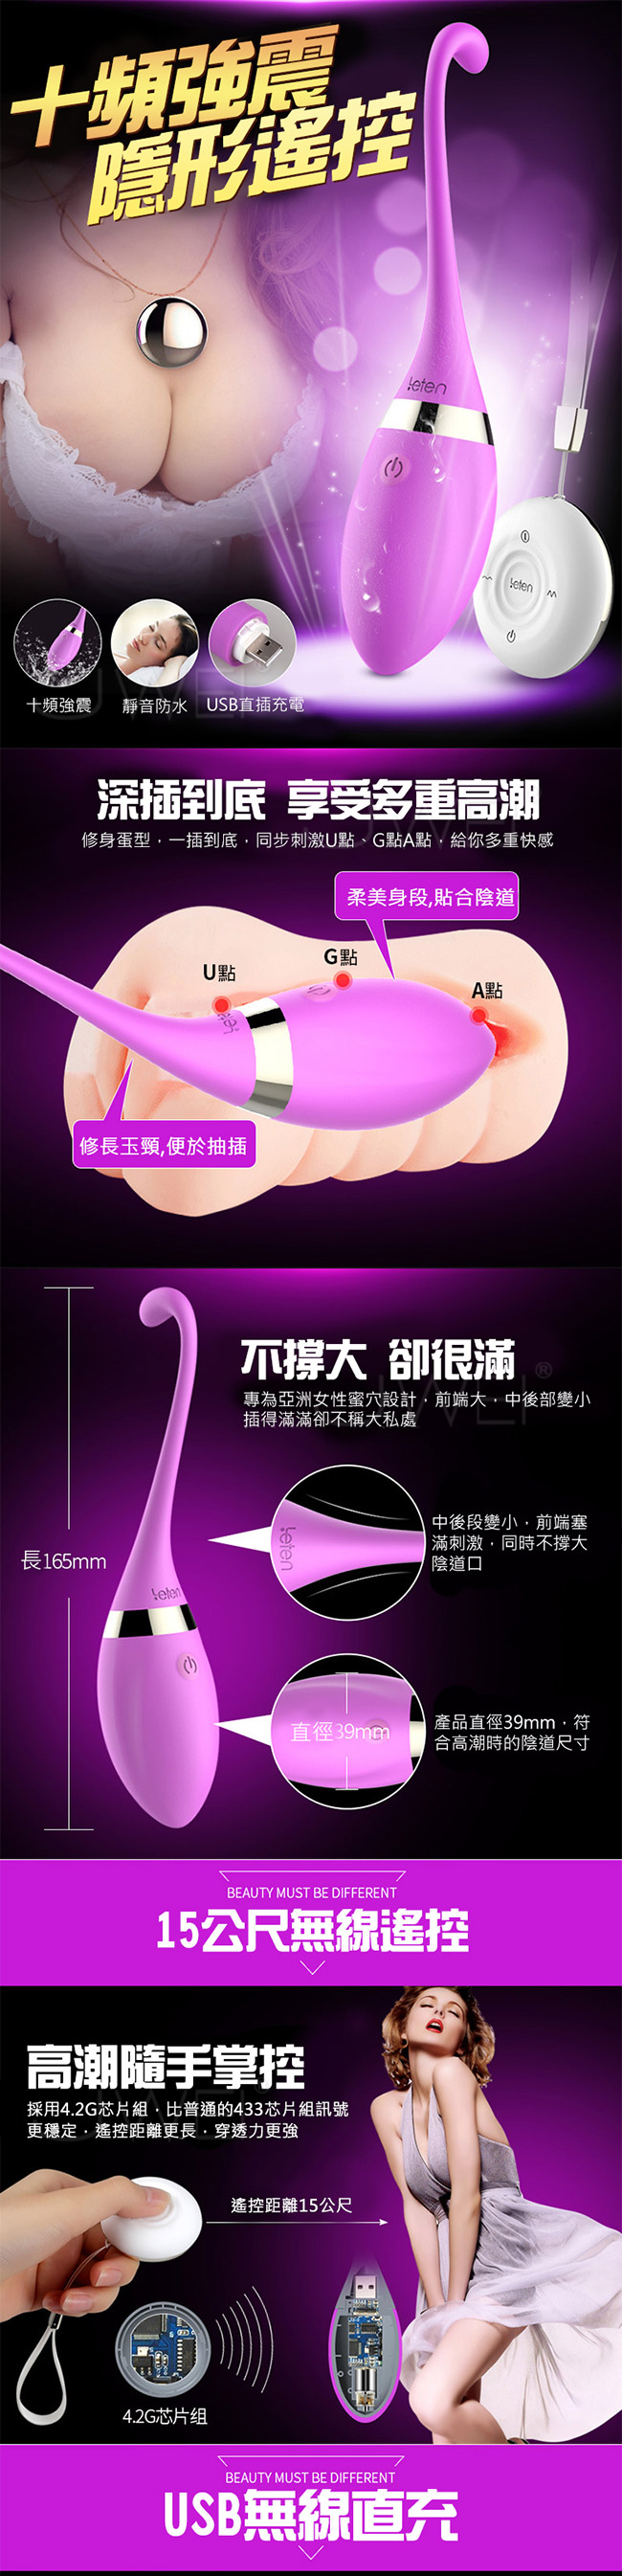 Leten‧隱形系列USB充電3X7頻遙控跳蛋-天鵝(紫)